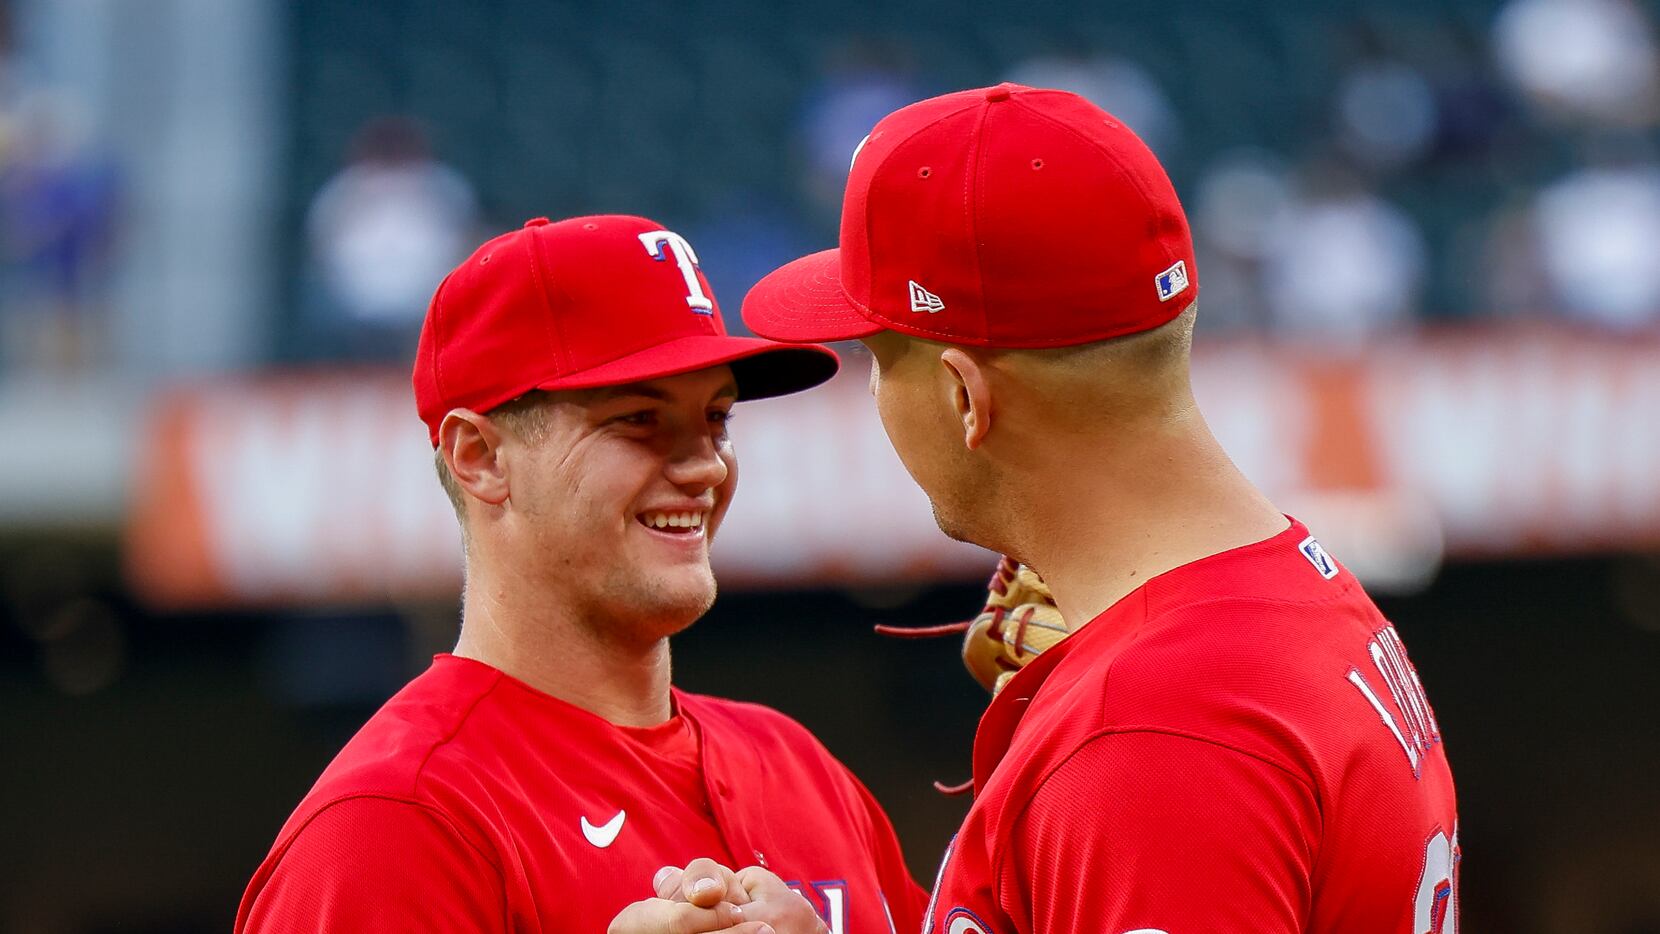 Texas Tech baseball alums: Josh Jung's big series helps Texas Rangers  advance